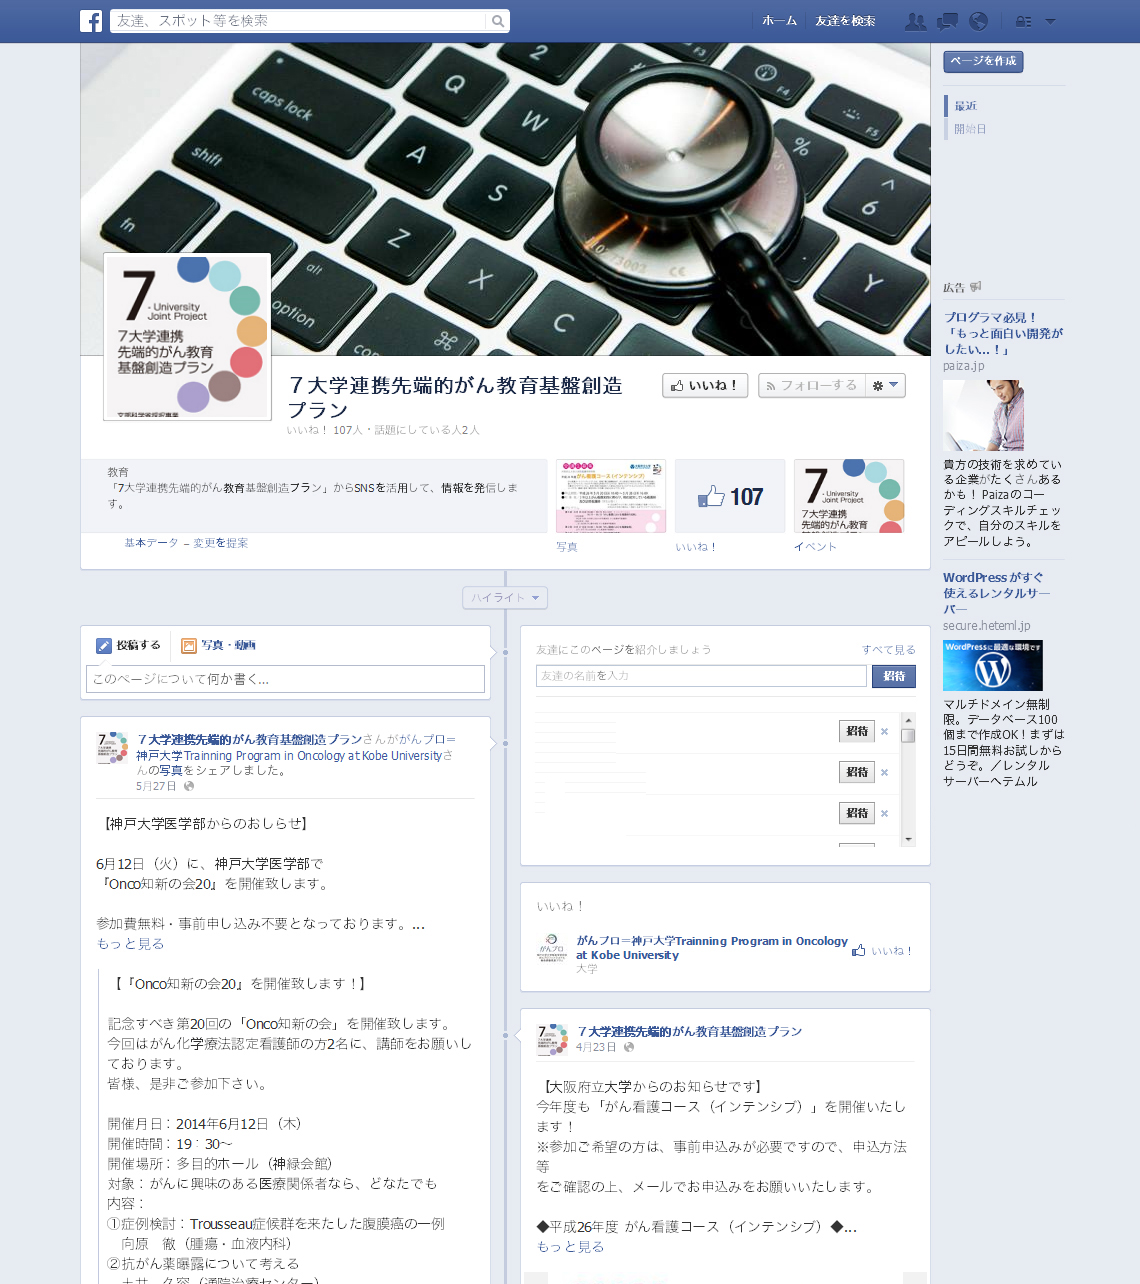 がんプロ公式Facebookページ